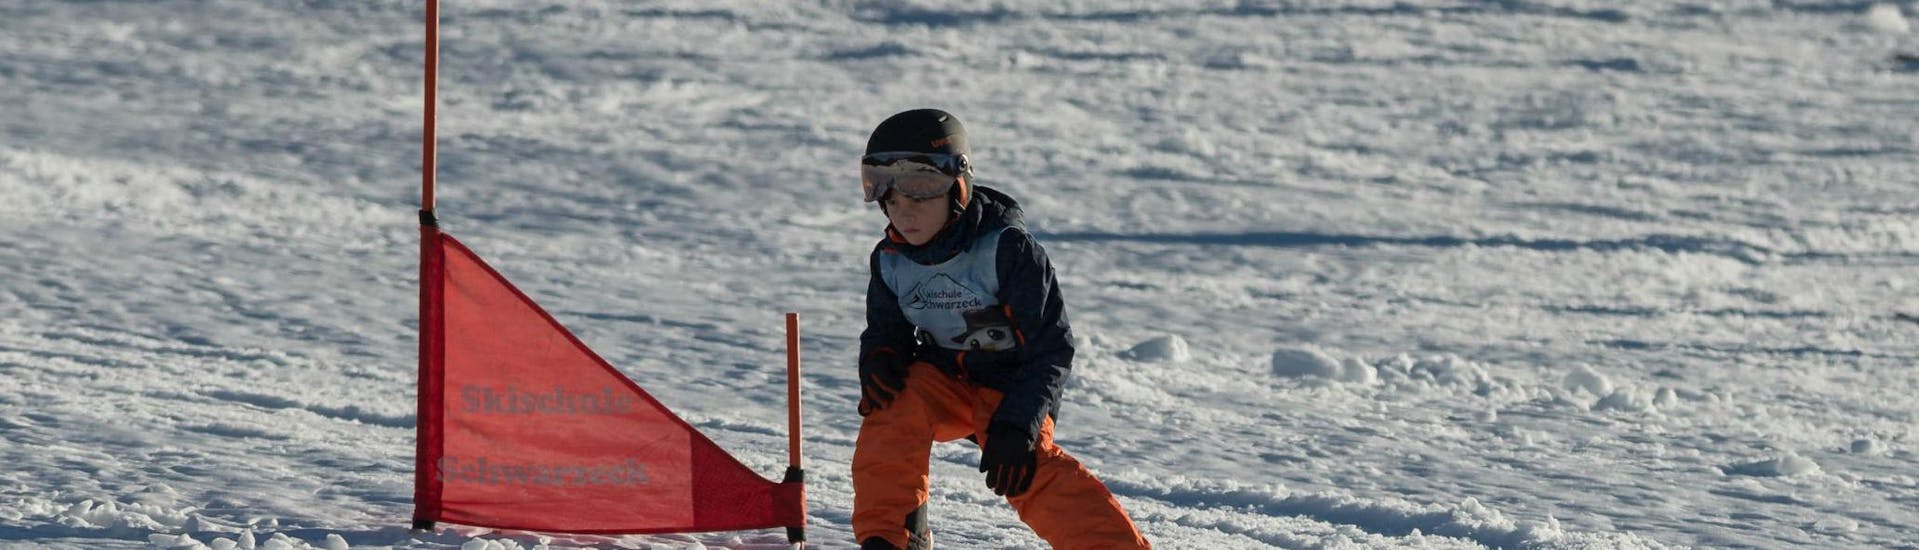 Cours de ski Enfants pour Tous niveaux.